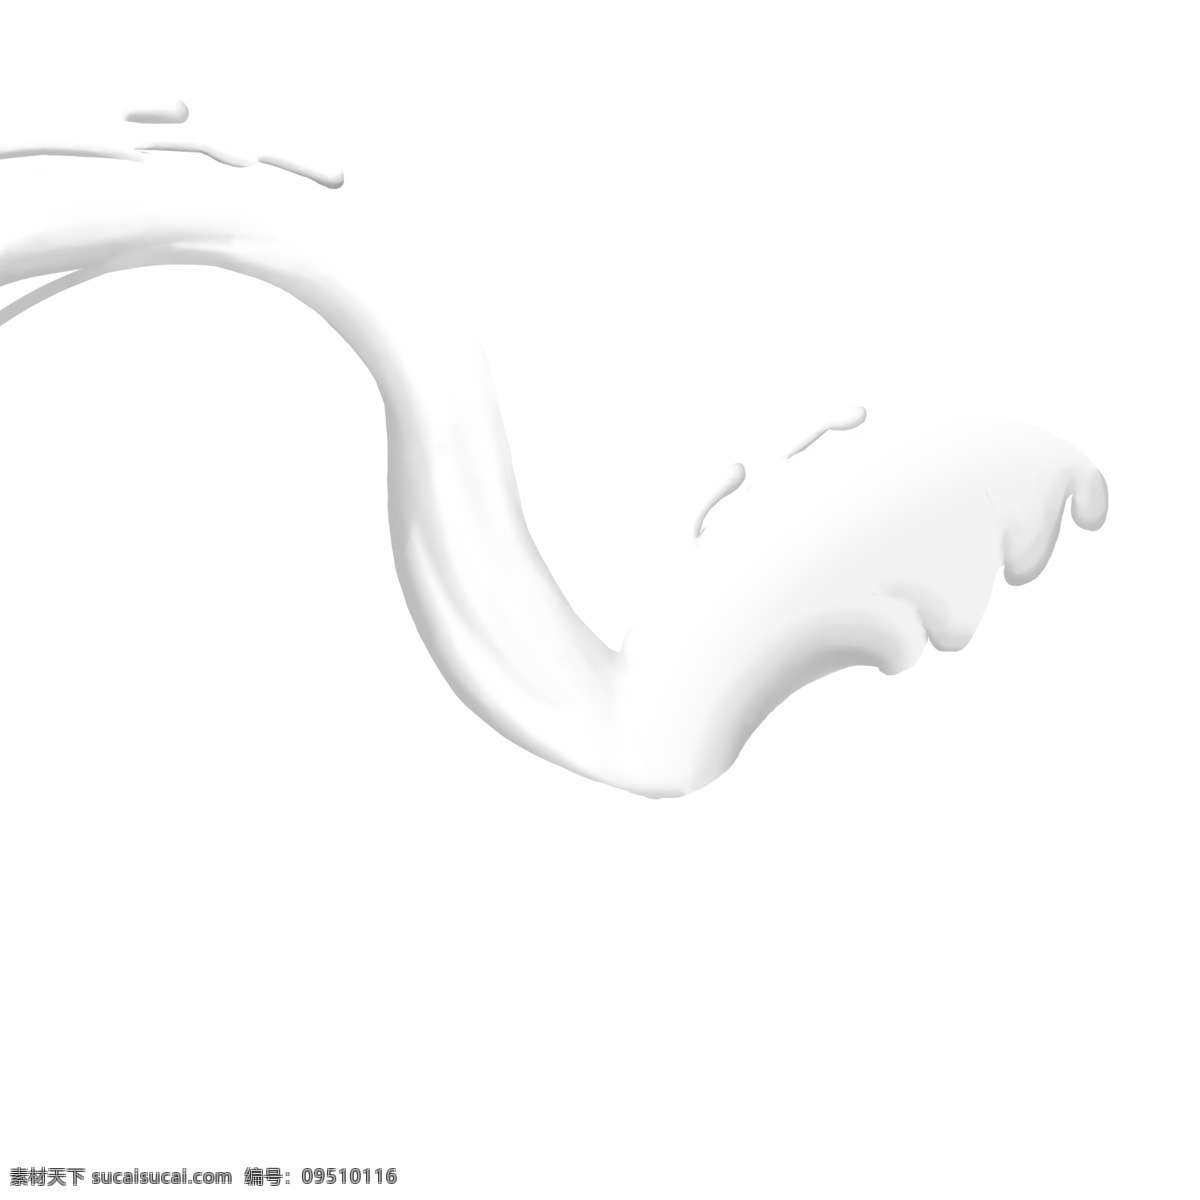 飞起 牛奶 液体 飞起来的牛奶 手绘牛奶 牛奶插画 创意牛奶海报 白色的牛奶 飞溅的牛奶 牛奶液体